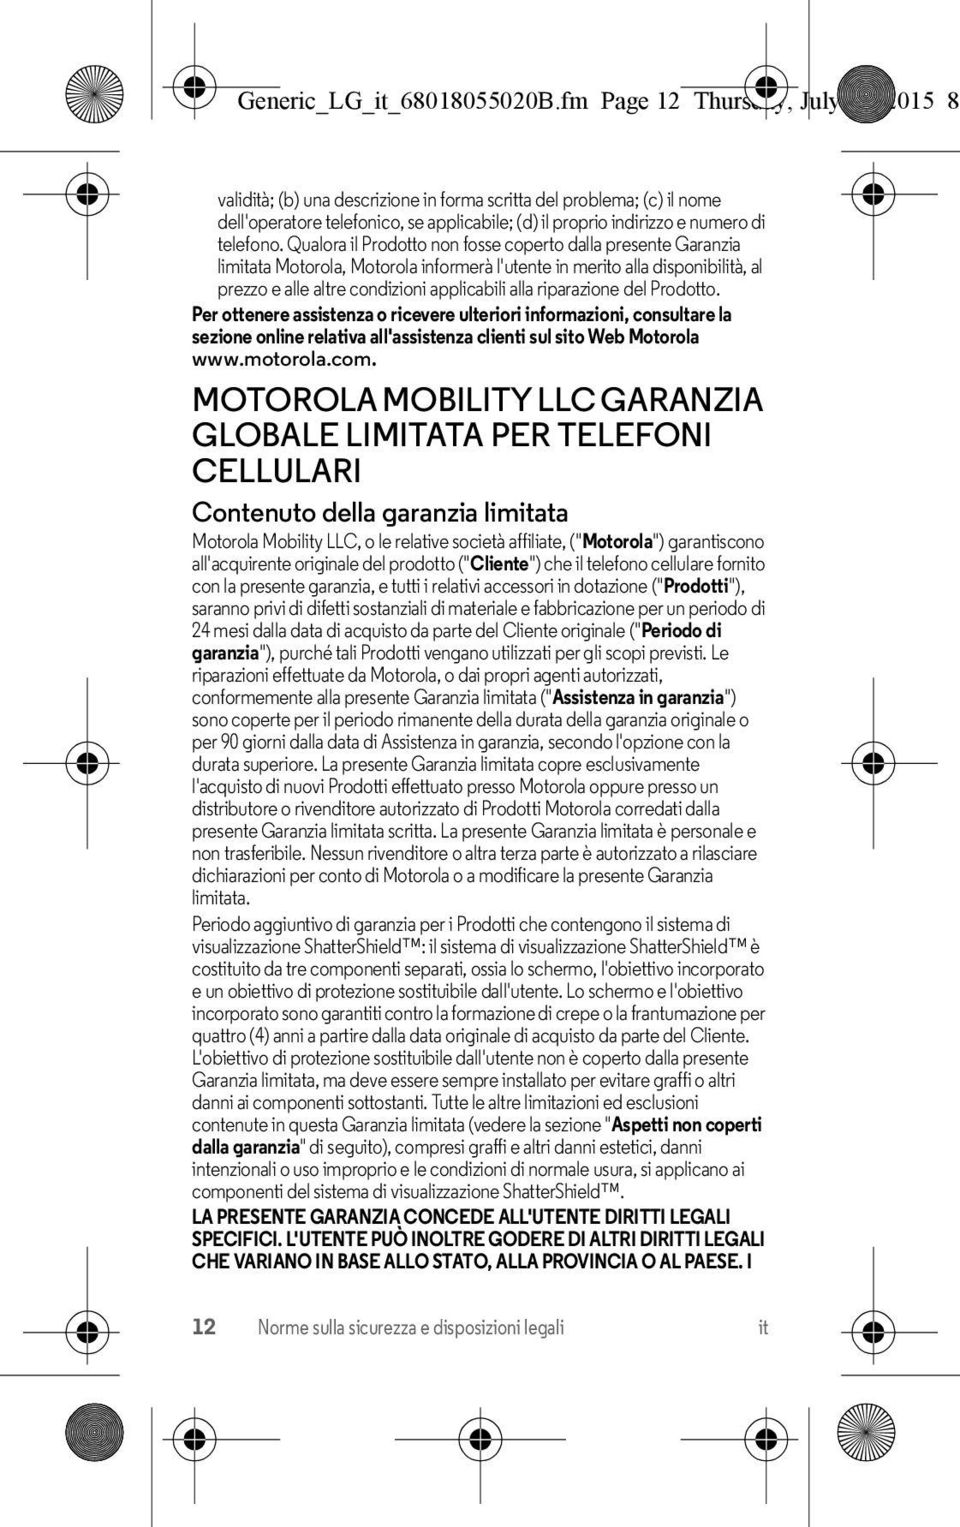 Qualora il Prodotto non fosse coperto dalla presente Garanzia limitata Motorola, Motorola informerà l'utente in merito alla disponibilità, al prezzo e alle altre condizioni applicabili alla